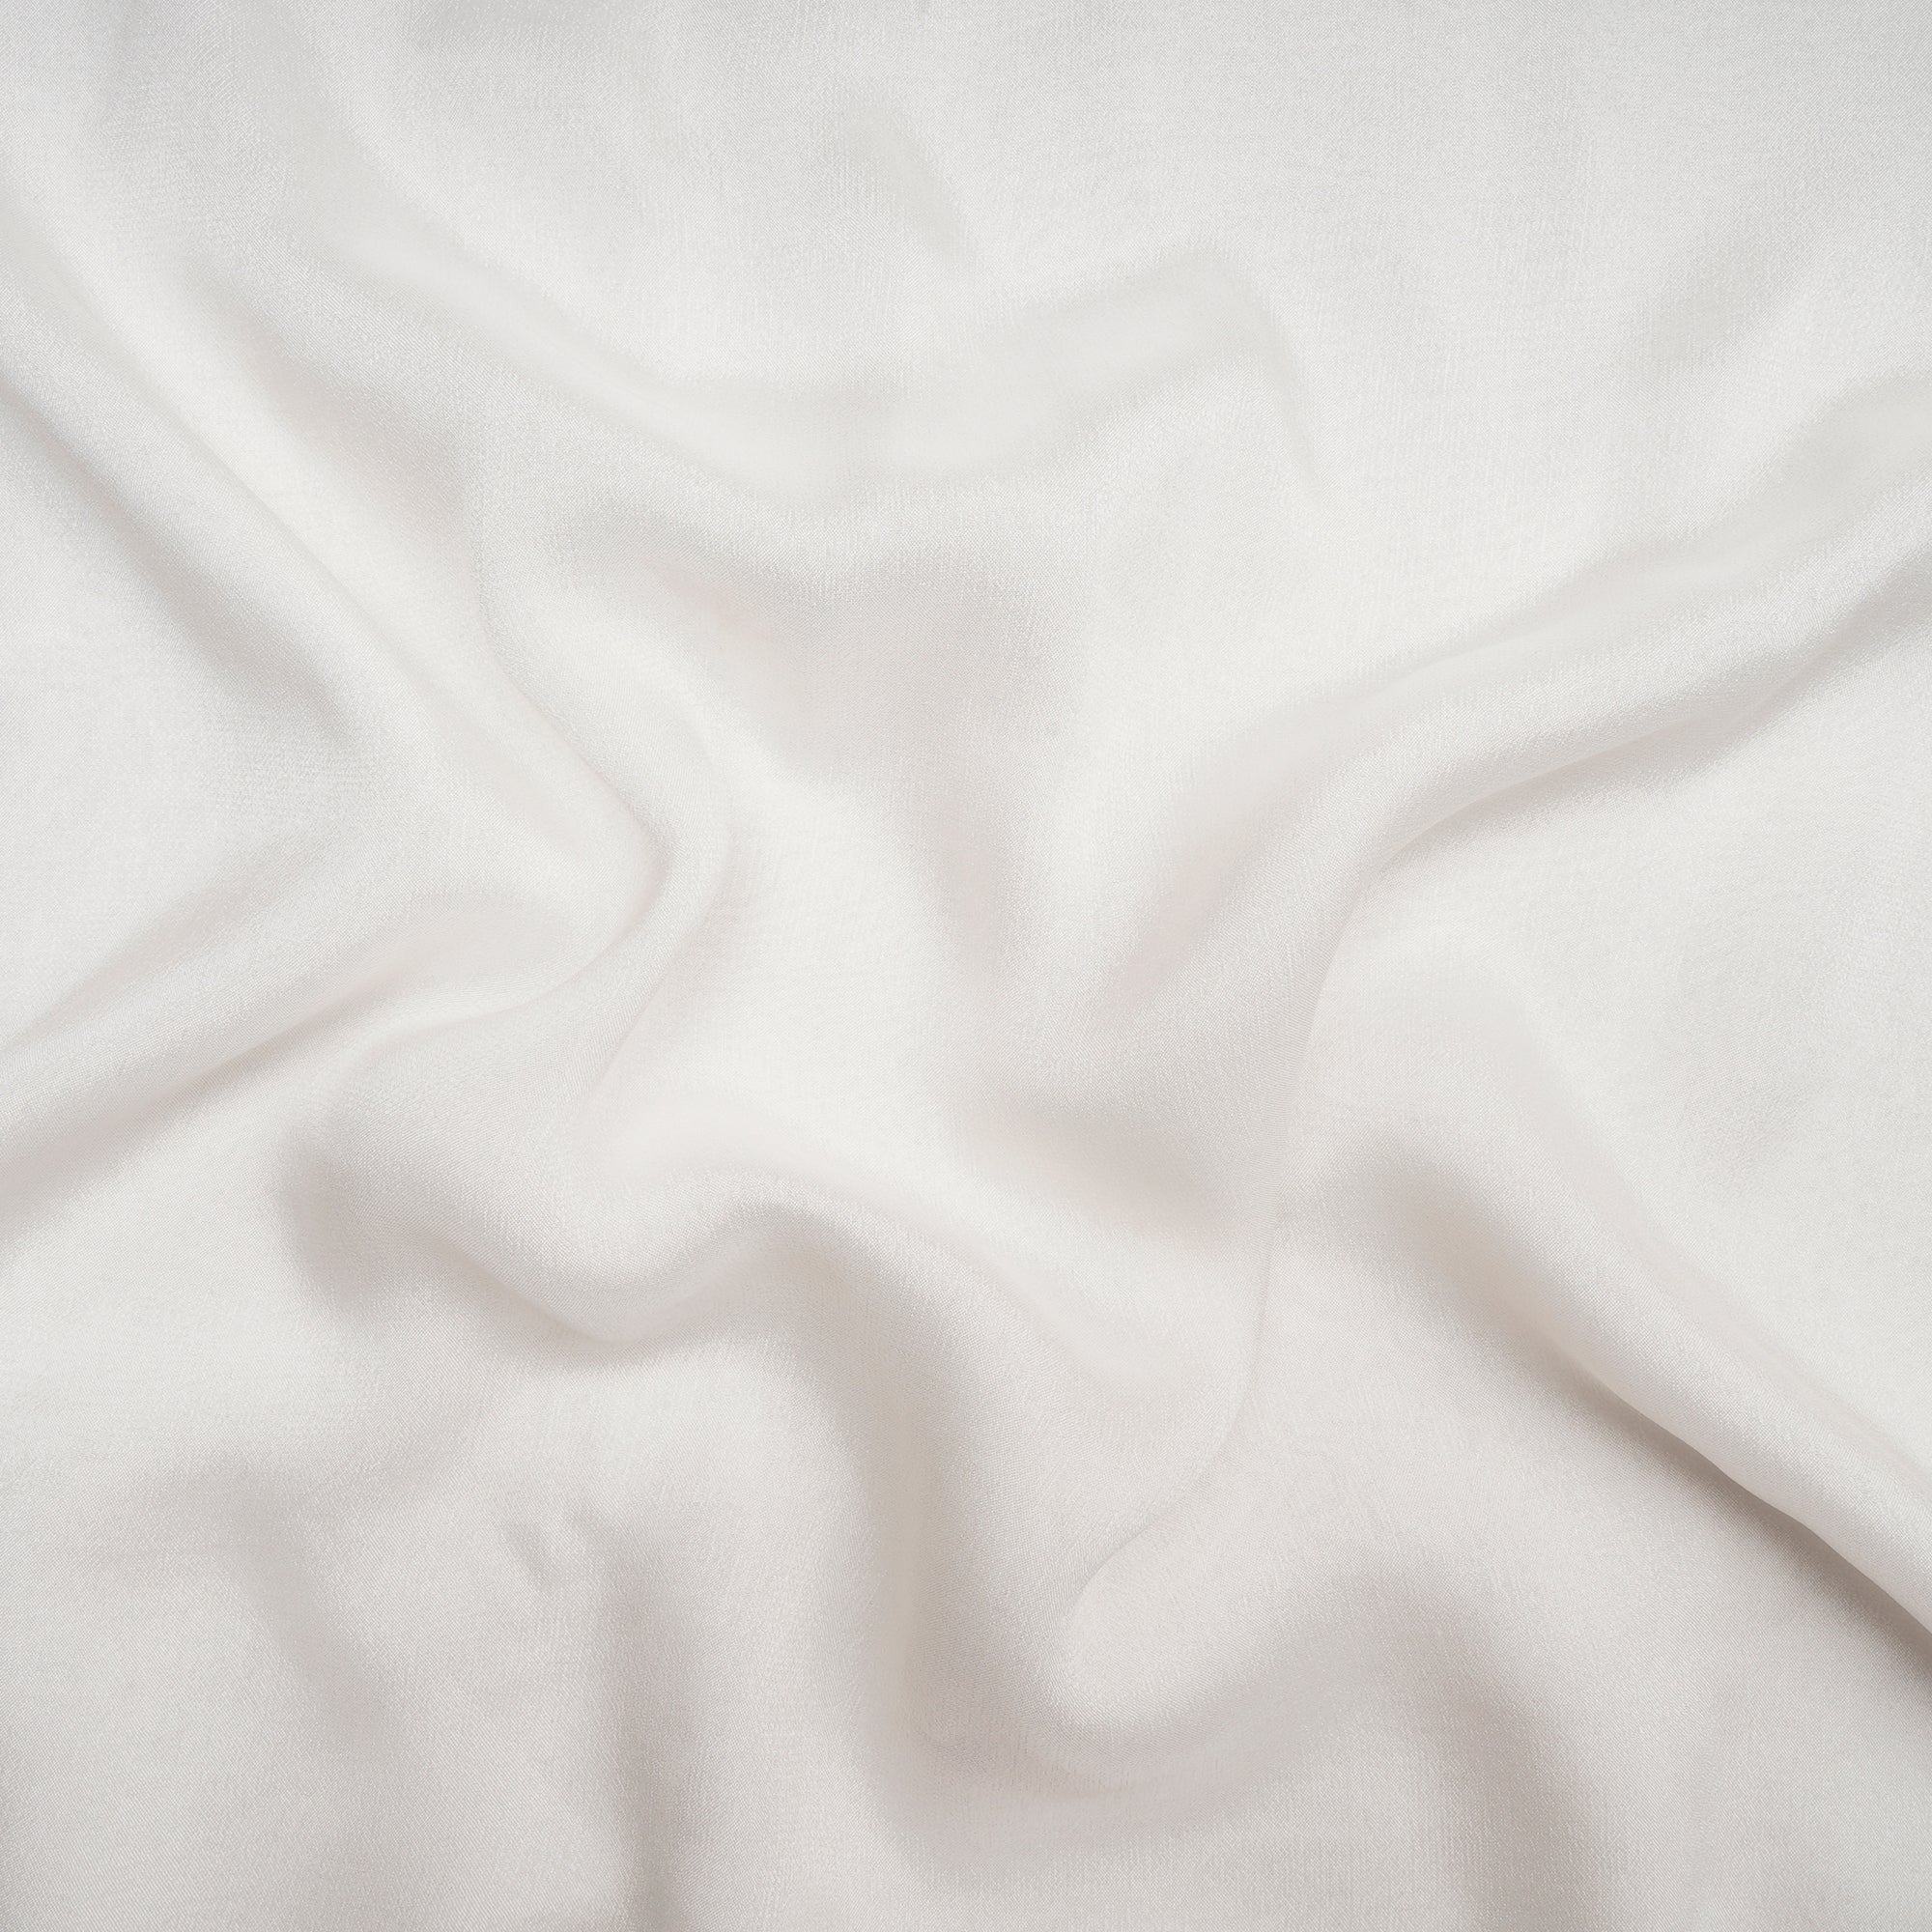 Off White Color Chinnon Chiffon Silk Fabric